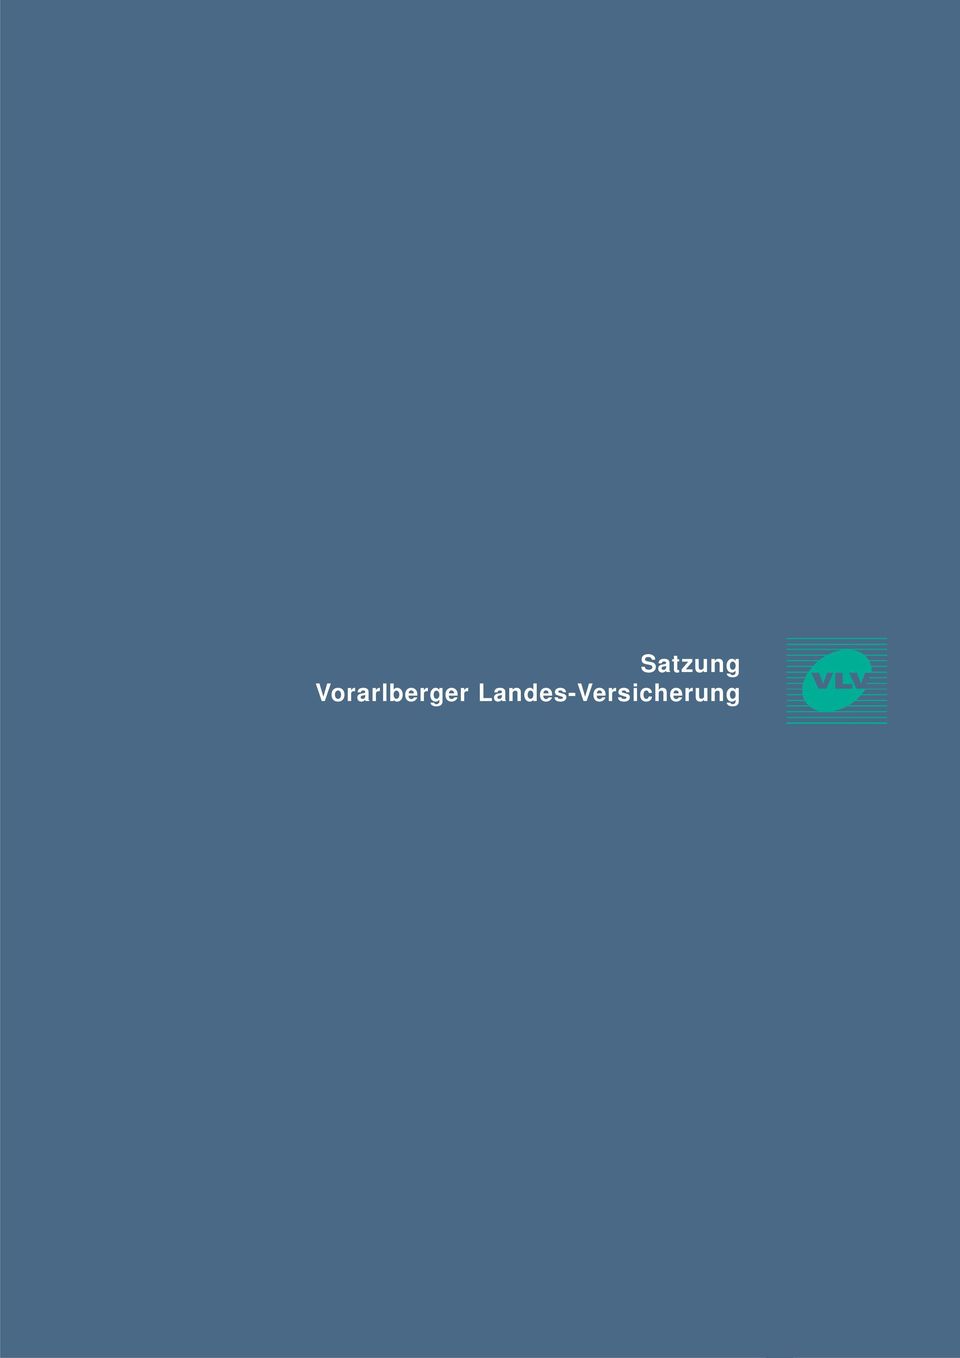 Satzung Vorarlberger